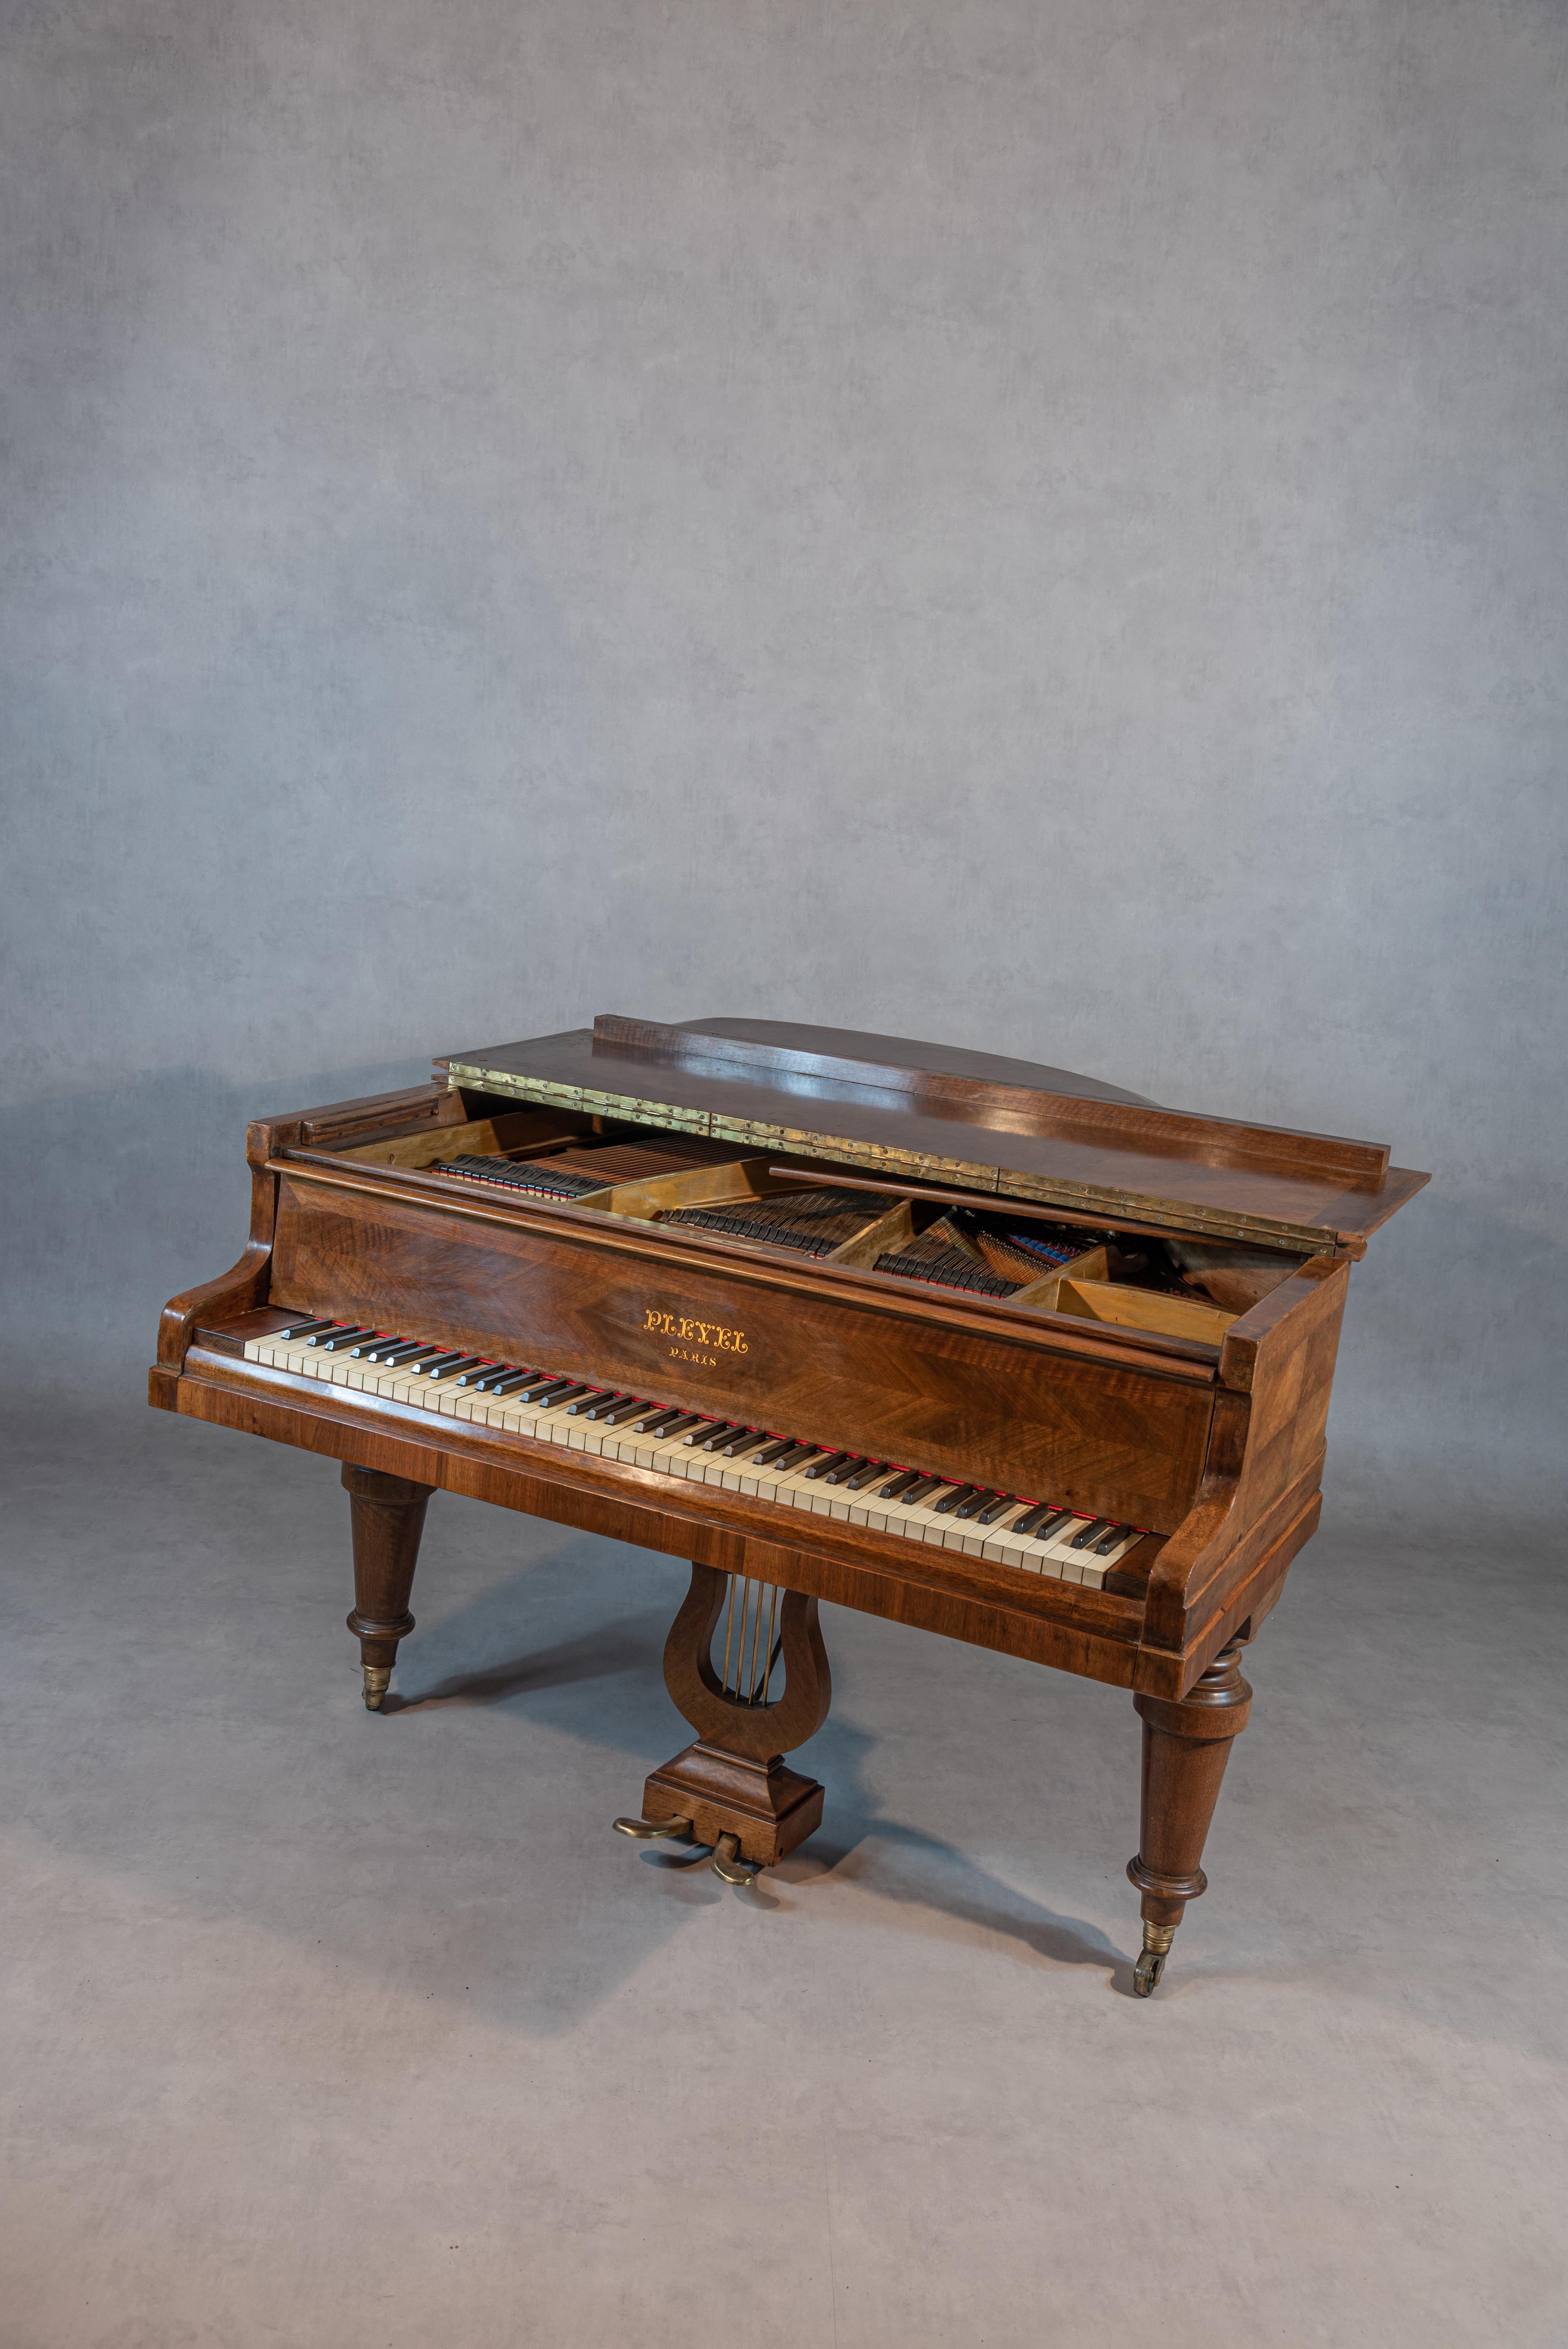 Ce piano à queue Pleyel français du début du 20e siècle est vraiment exceptionnel. La marque Pleyel est légendaire et a été appréciée par des compositeurs de renom tels que Chopin, Debussy et Ravel pour sa sonorité riche et unique. Ce piano